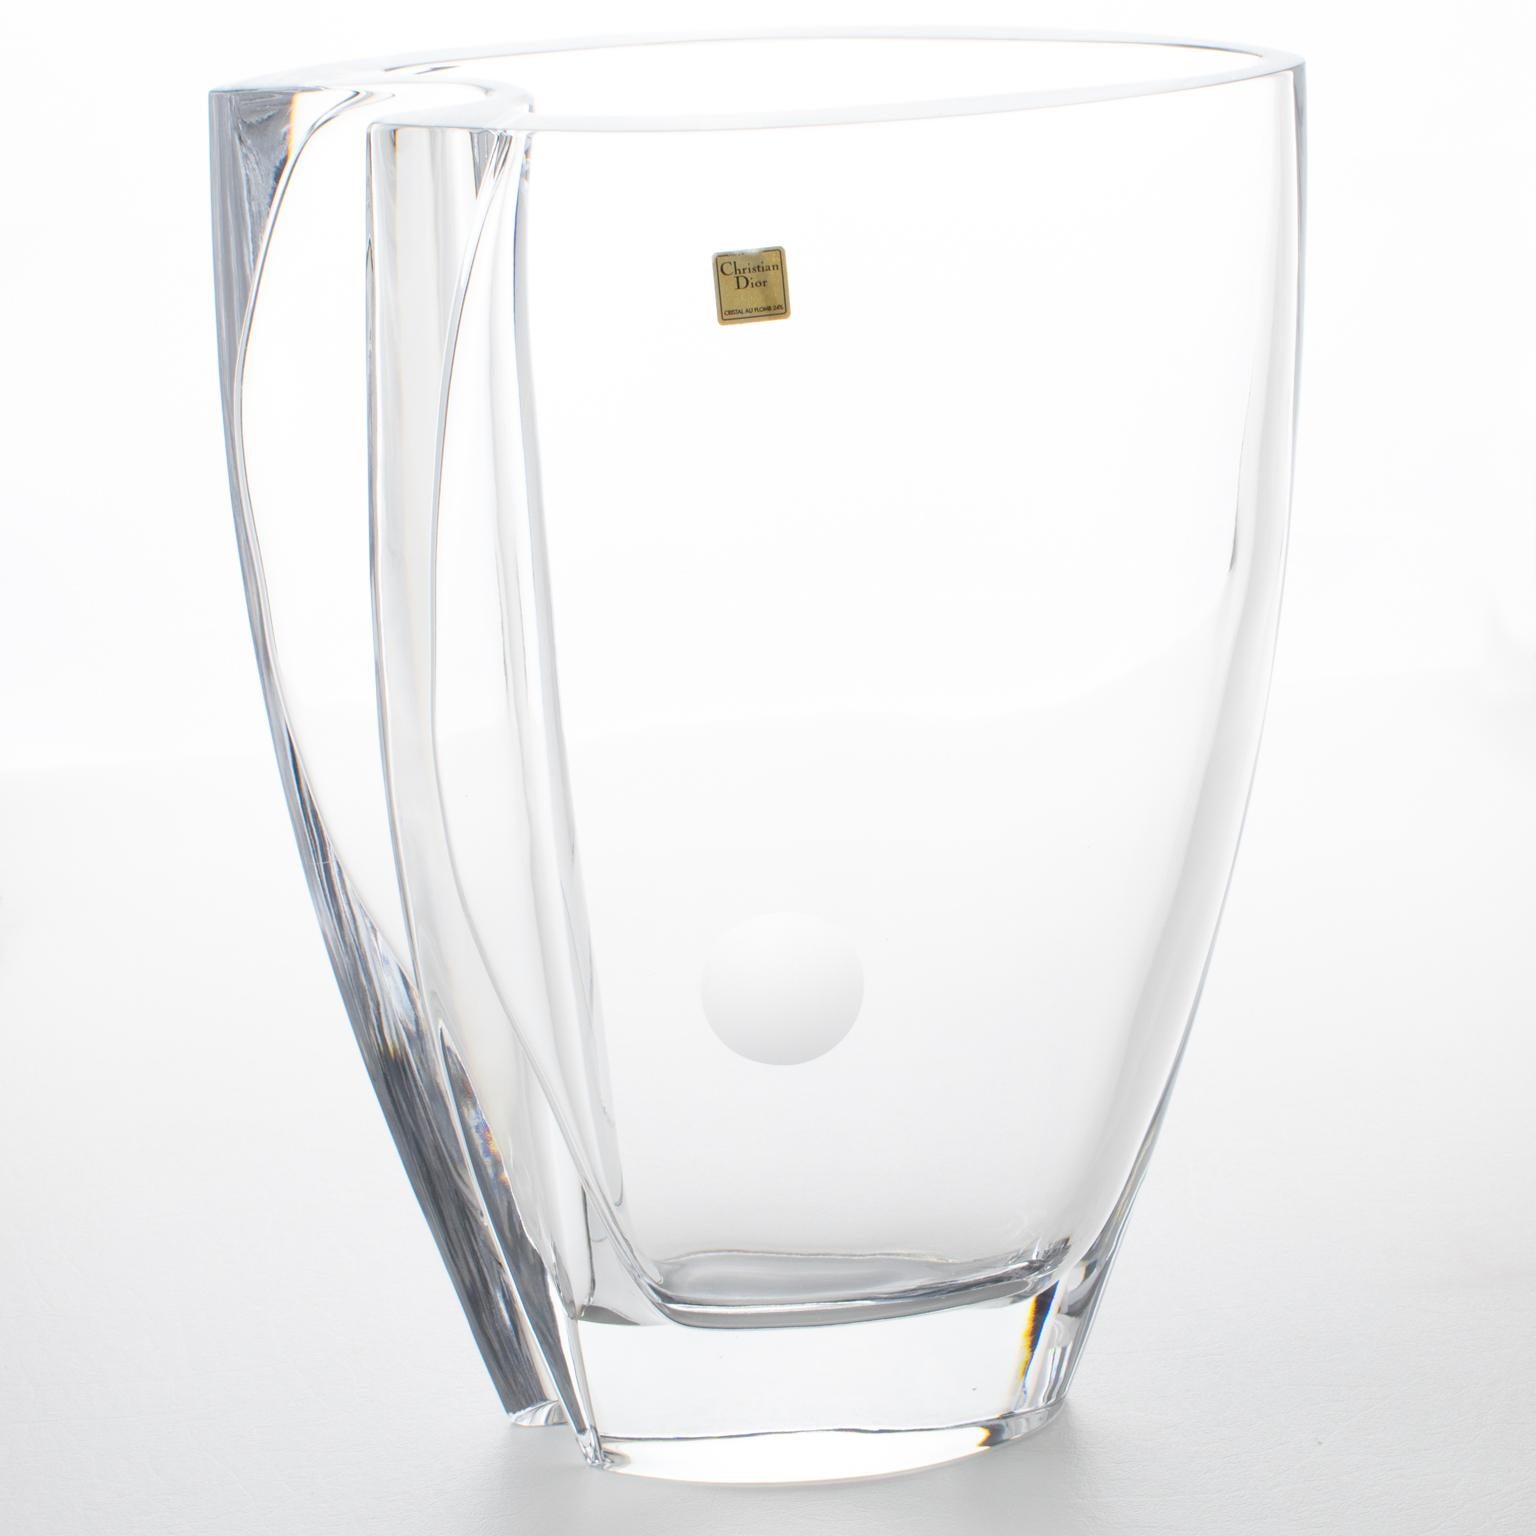 Ce superbe vase en cristal a été conçu pour la Christian Dior Home Collection en Italie dans les années 1980. L'œuvre d'art monumentale en verre a une forme lisse, épurée, minimaliste et ondulée, avec un point dépoli gravé sur un côté. Le vase est